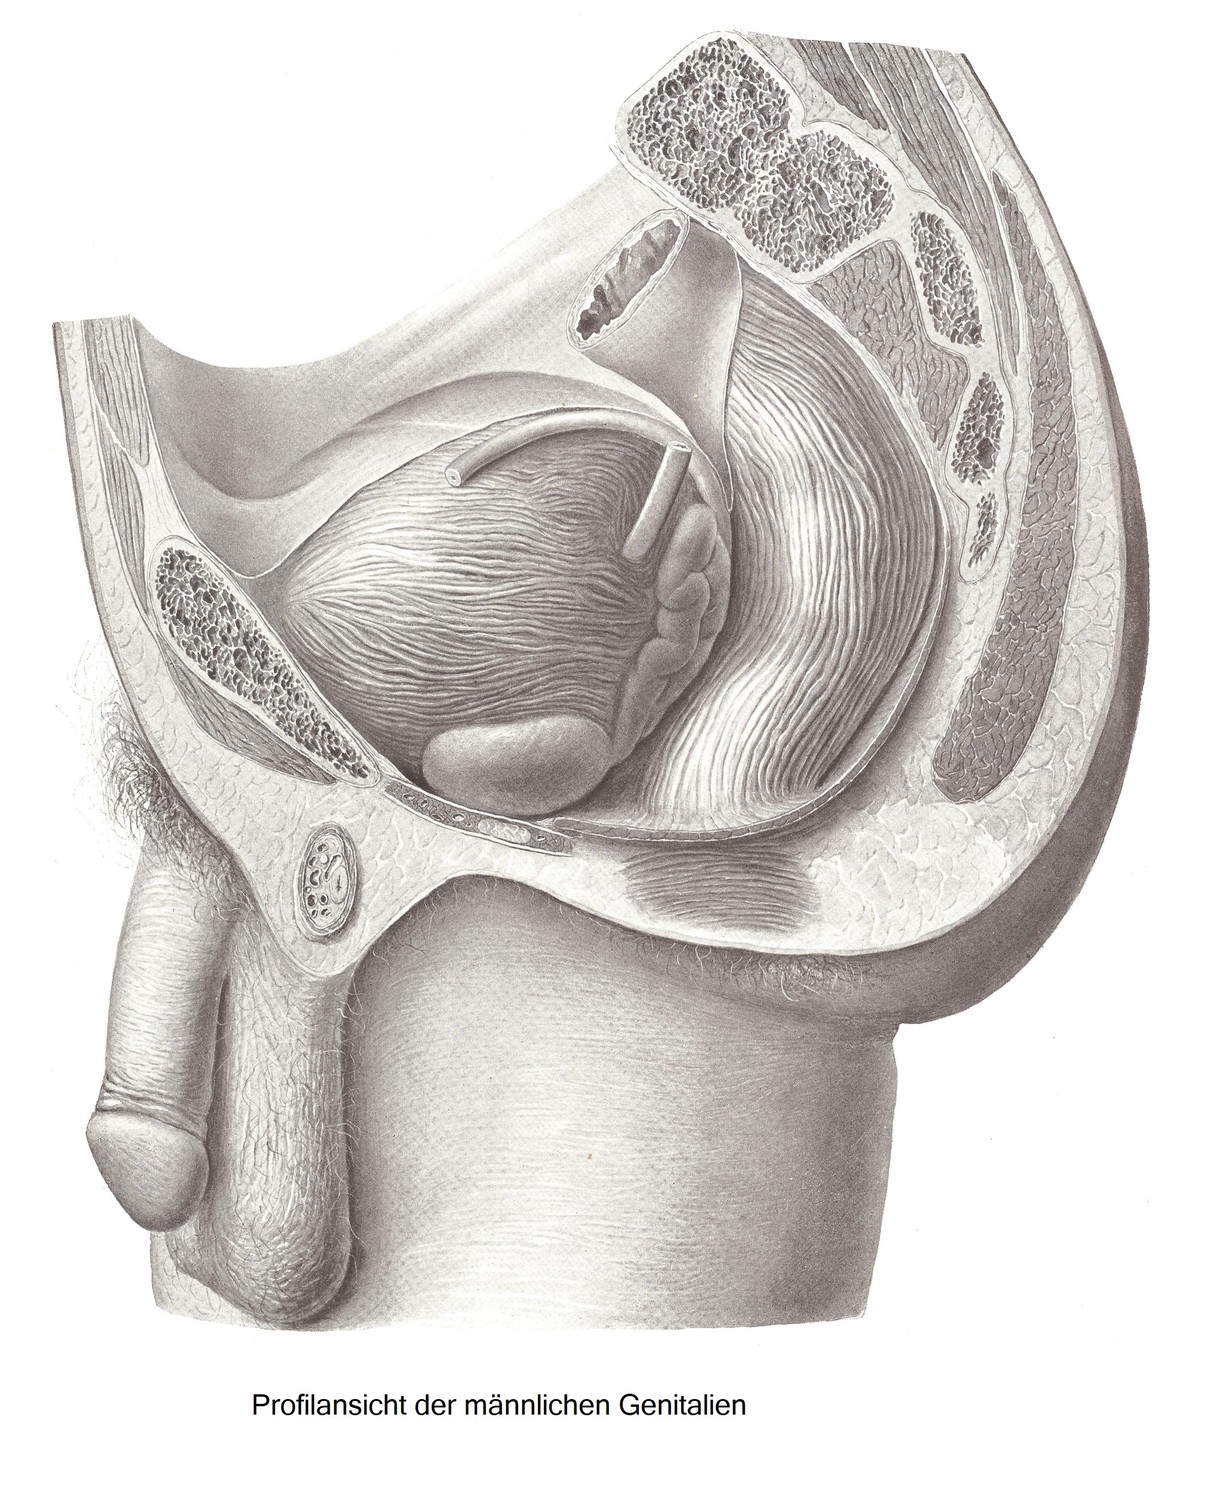 Профиль мужских гениталий. Крестец, копчик и лобковая кость распилены на несколько сантиметров от средней линии, брюшину рассекают от латеральной части мочевого пузыря.